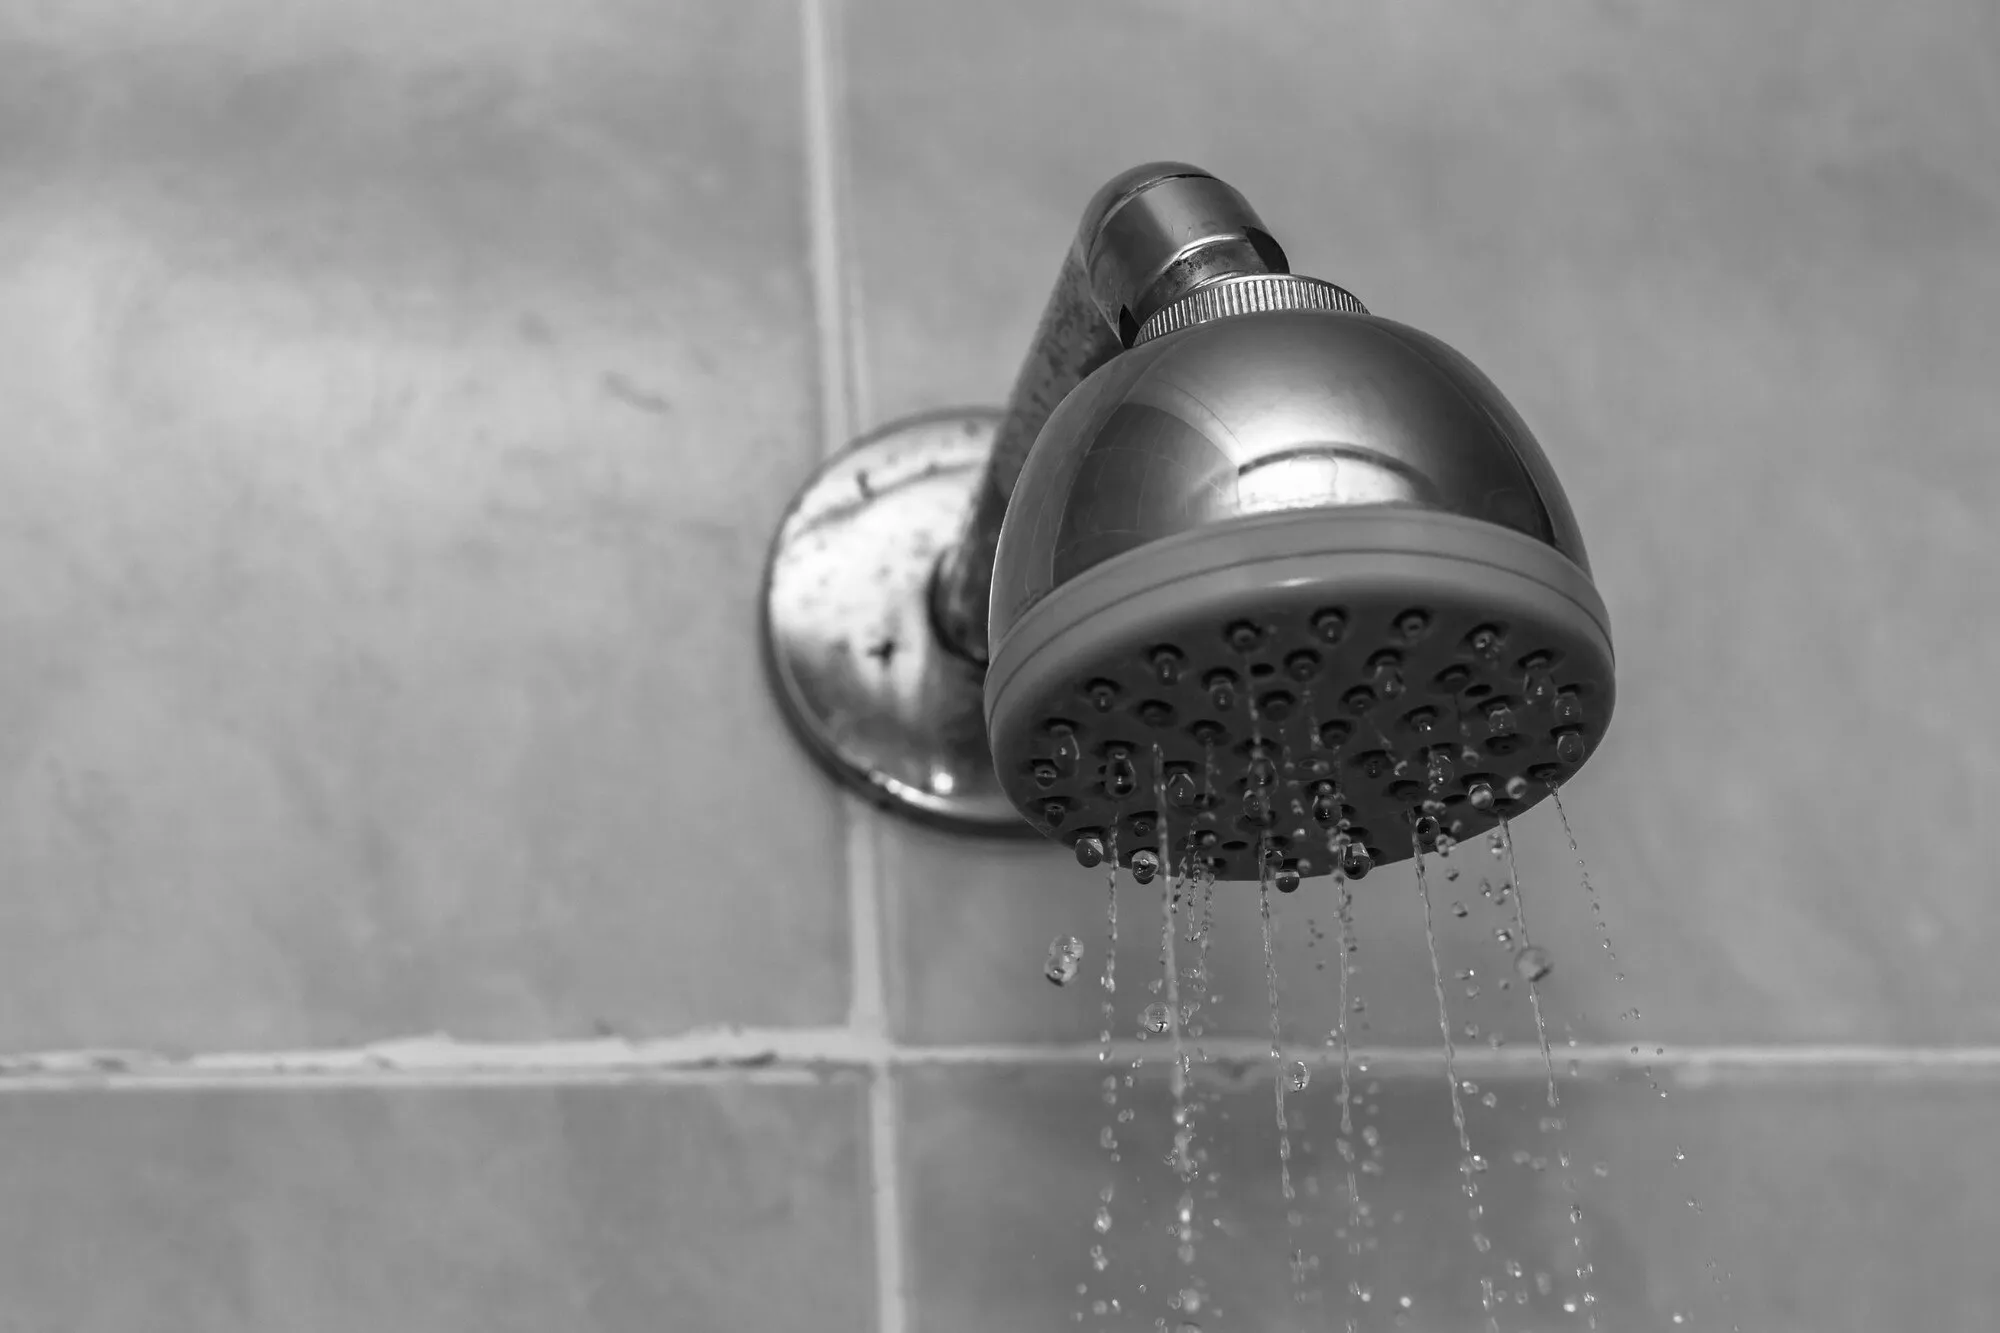 Hier is een handige hack om de waterdruk van je douche te verhogen